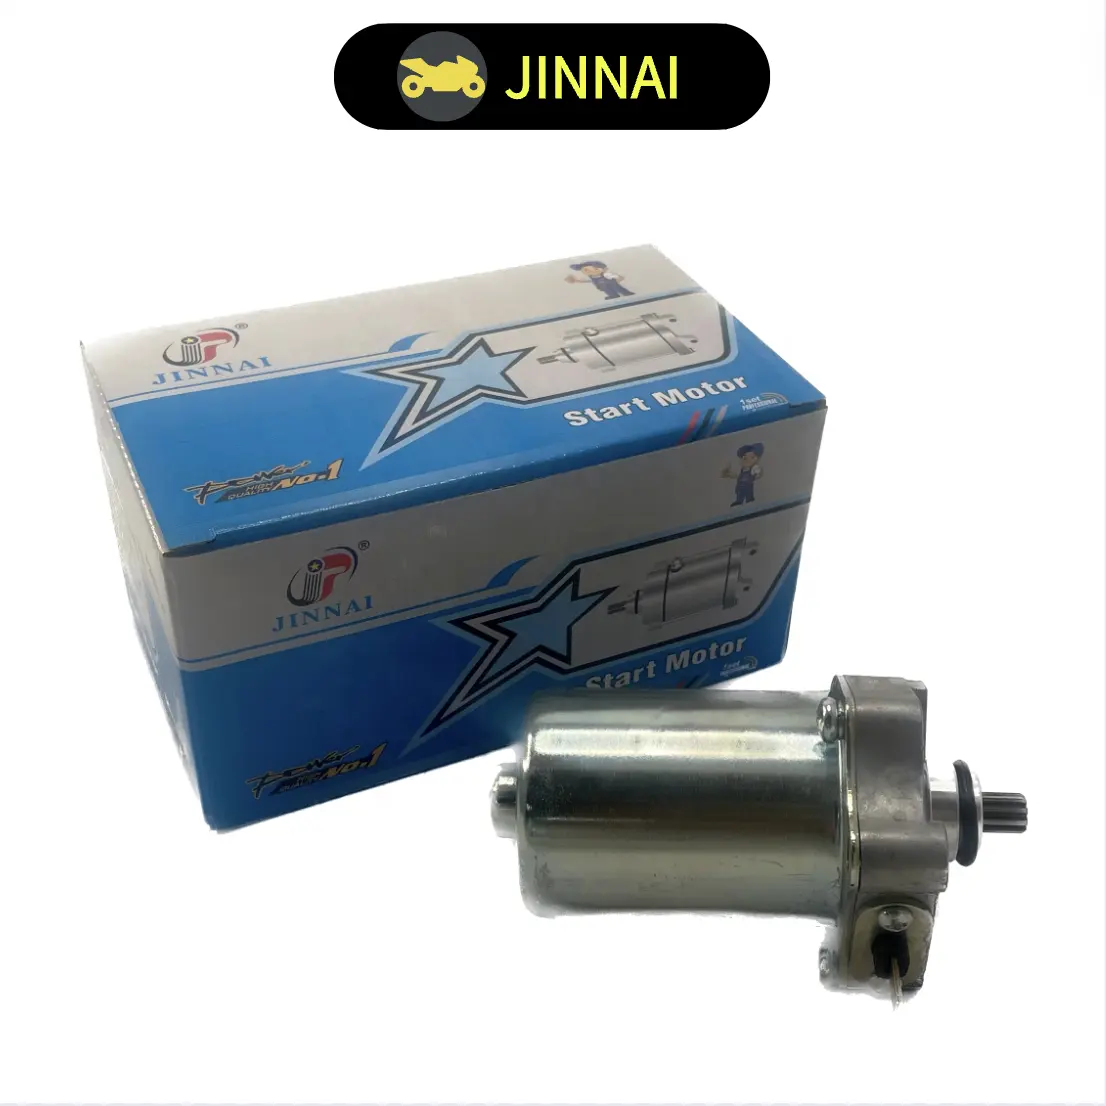 JINNAI-motor de arranque de motocicleta, 12V, CE, motor de arranque de electricidad, clic